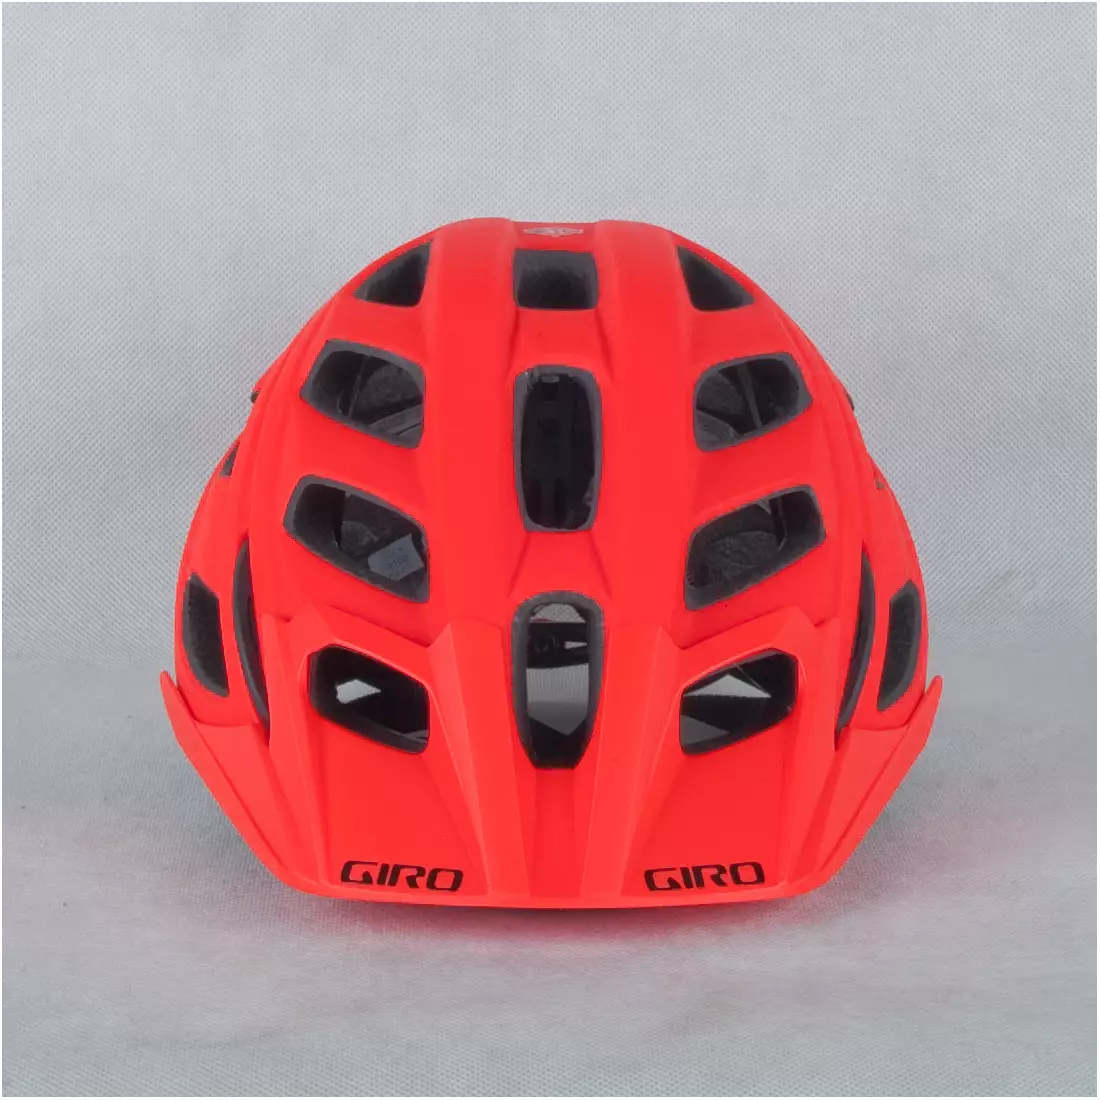 GIRO HEX - red bicycle helmet